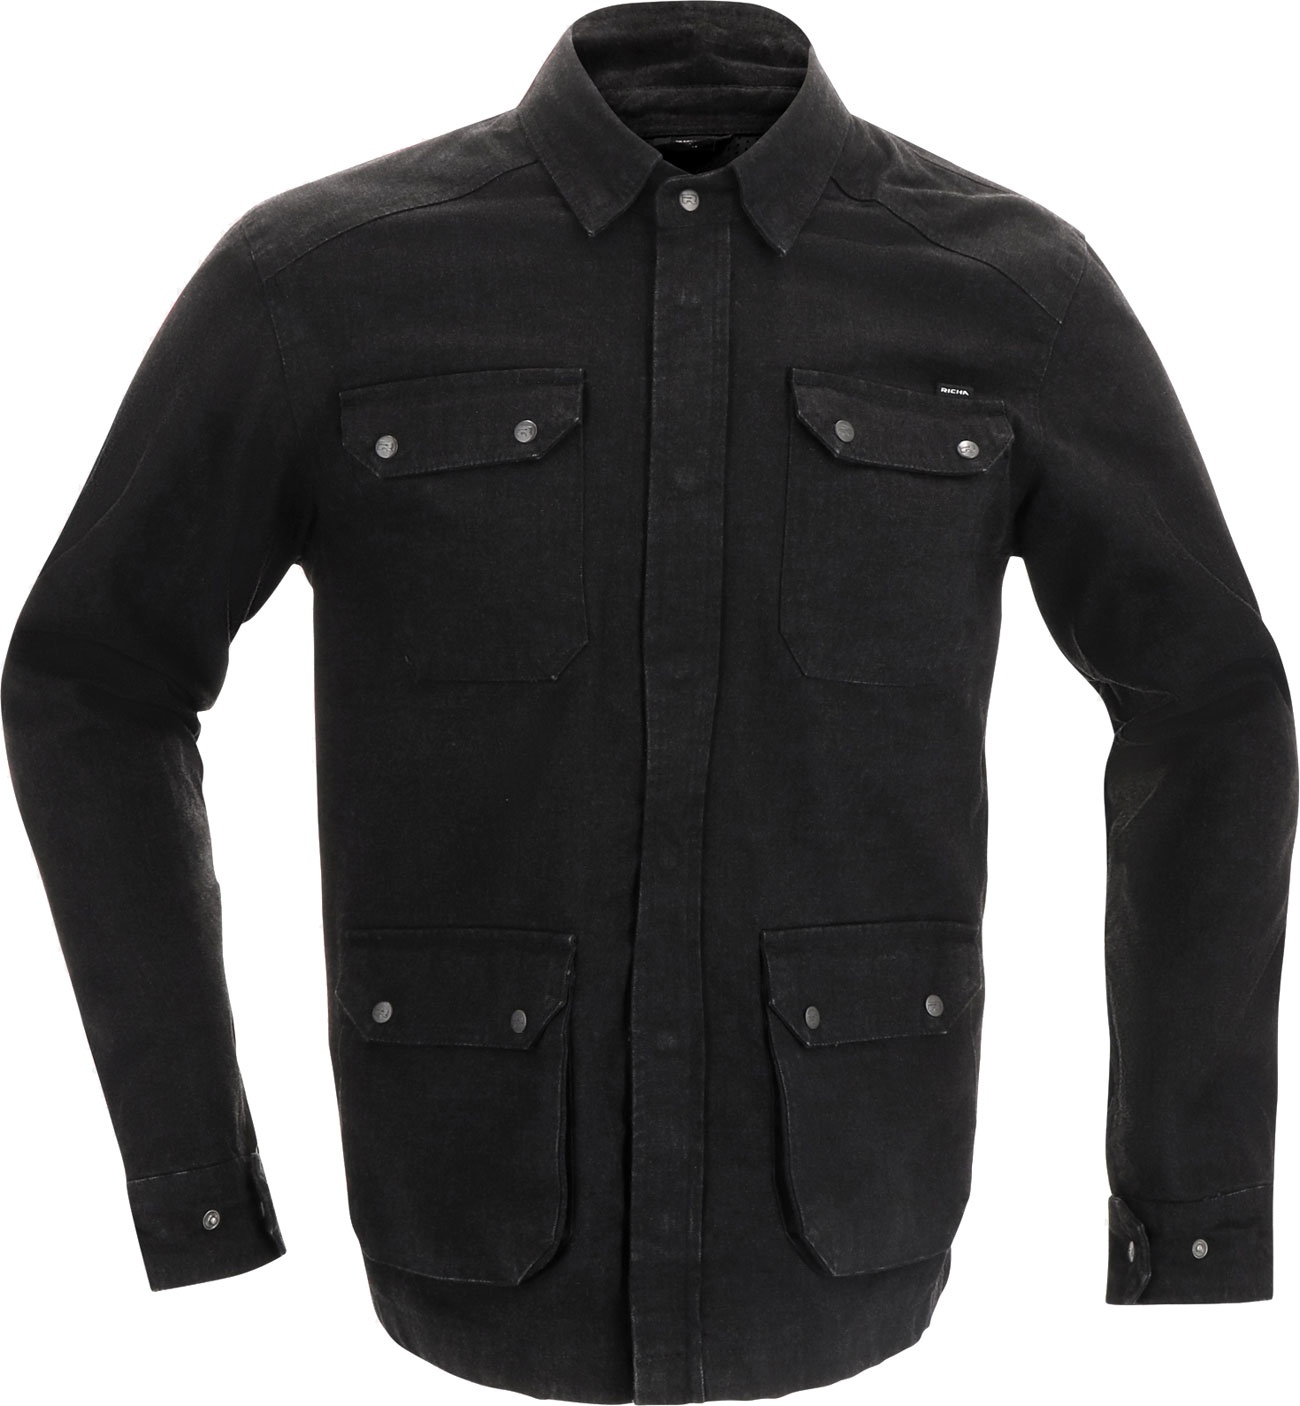 Richa London, veste/shirt en textile - Noir - XL